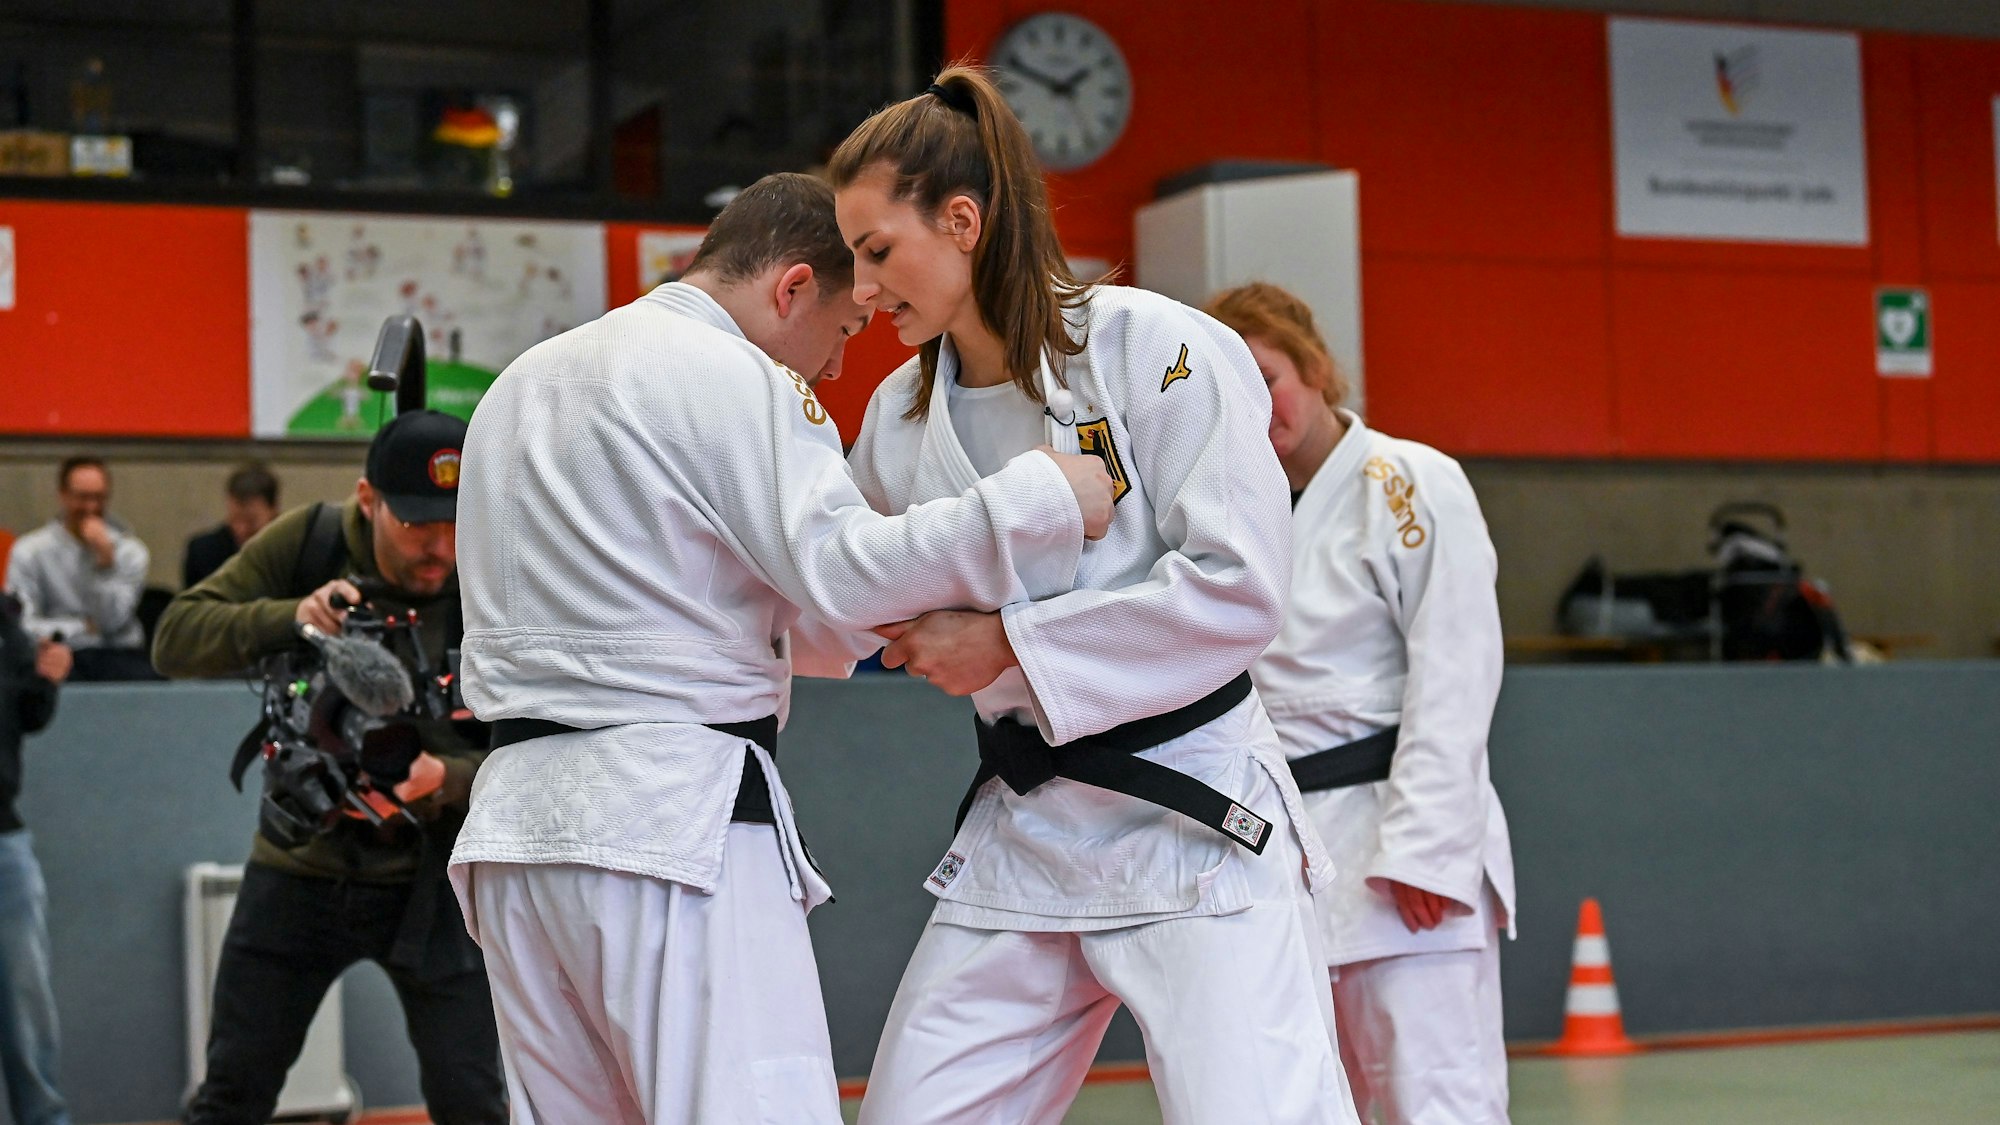 Judo-Weltmeisterin Anna-Maria Wagner trainiert mit Sportlern des ZABS in Frechen.